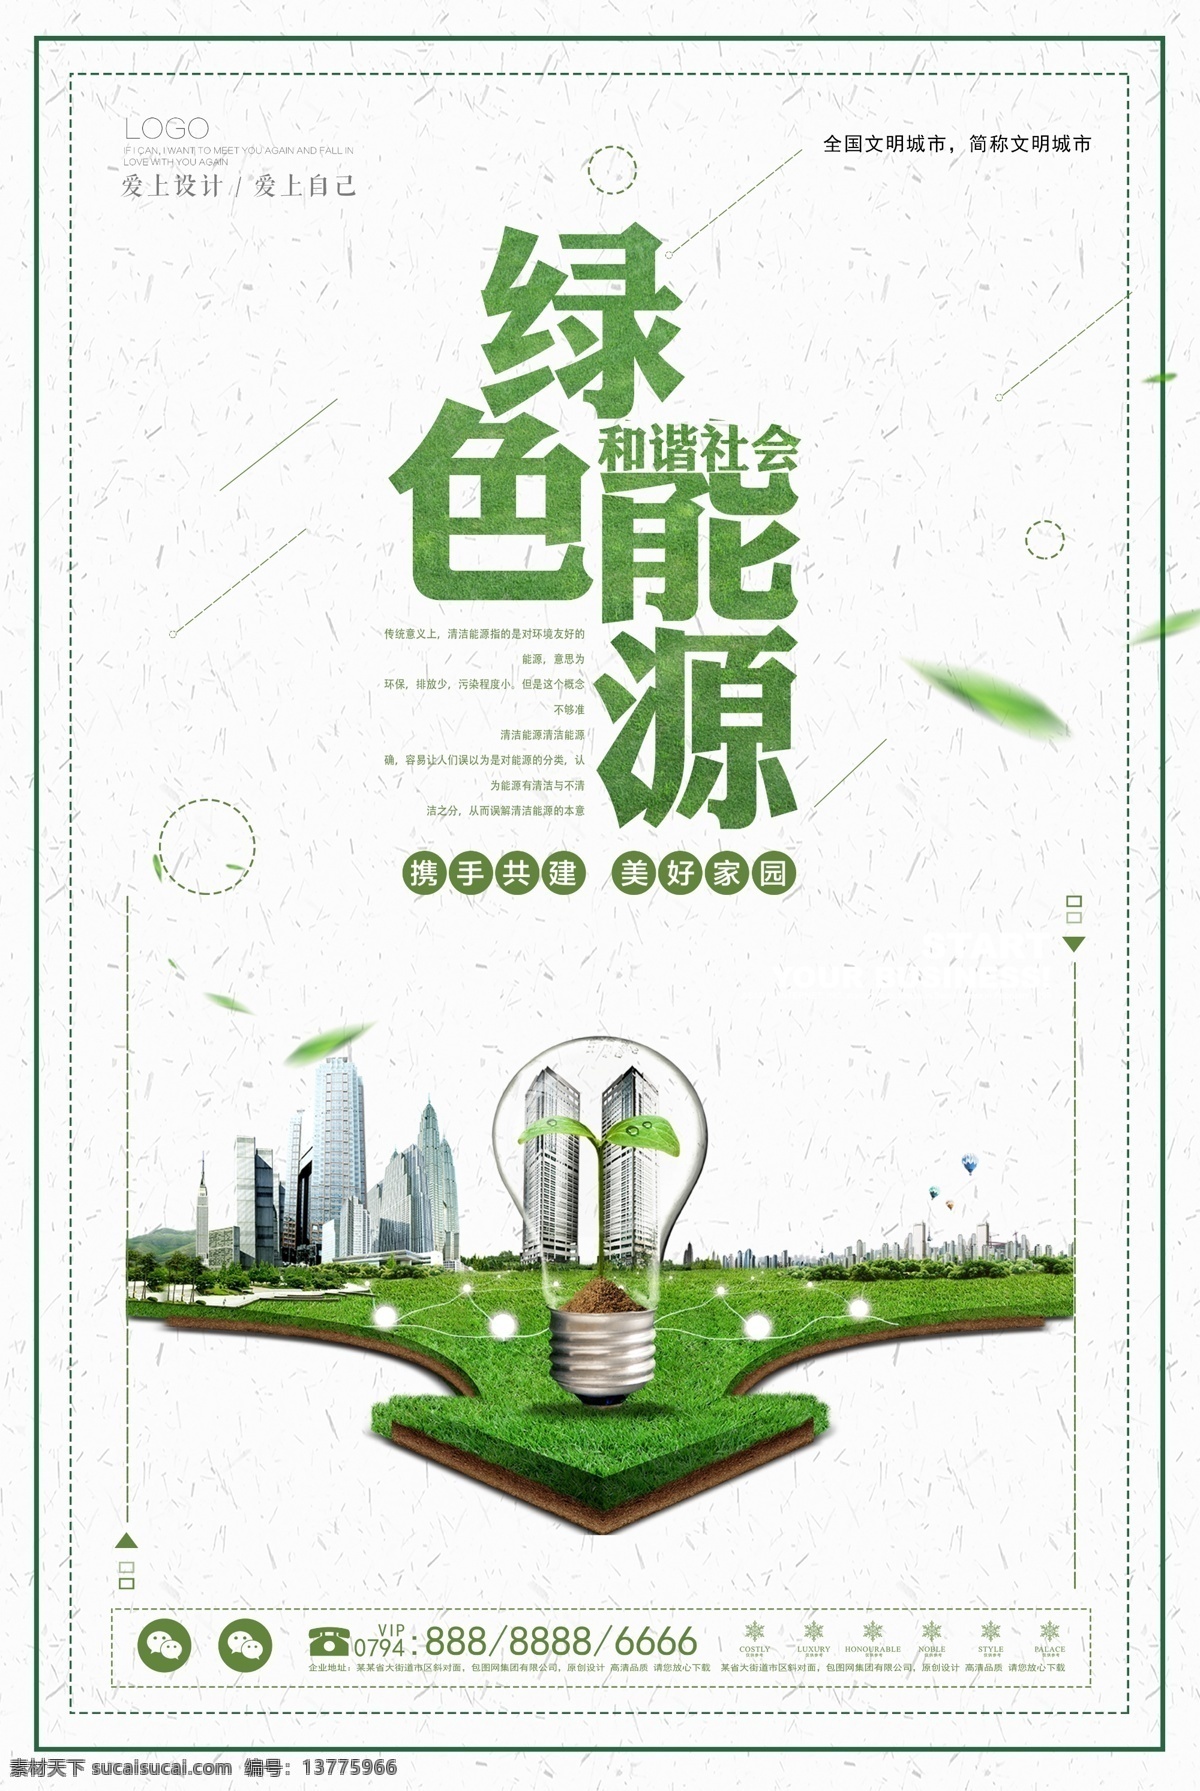 简洁 公益 绿色 能源 海报 设计海报 公益海报 海报公益 简洁海报 海报简洁 绿色公益 绿色公益海报 绿色能源海报 海报绿色能源 绿色能源 简洁绿色 公益简洁 绿色简洁 公益能源